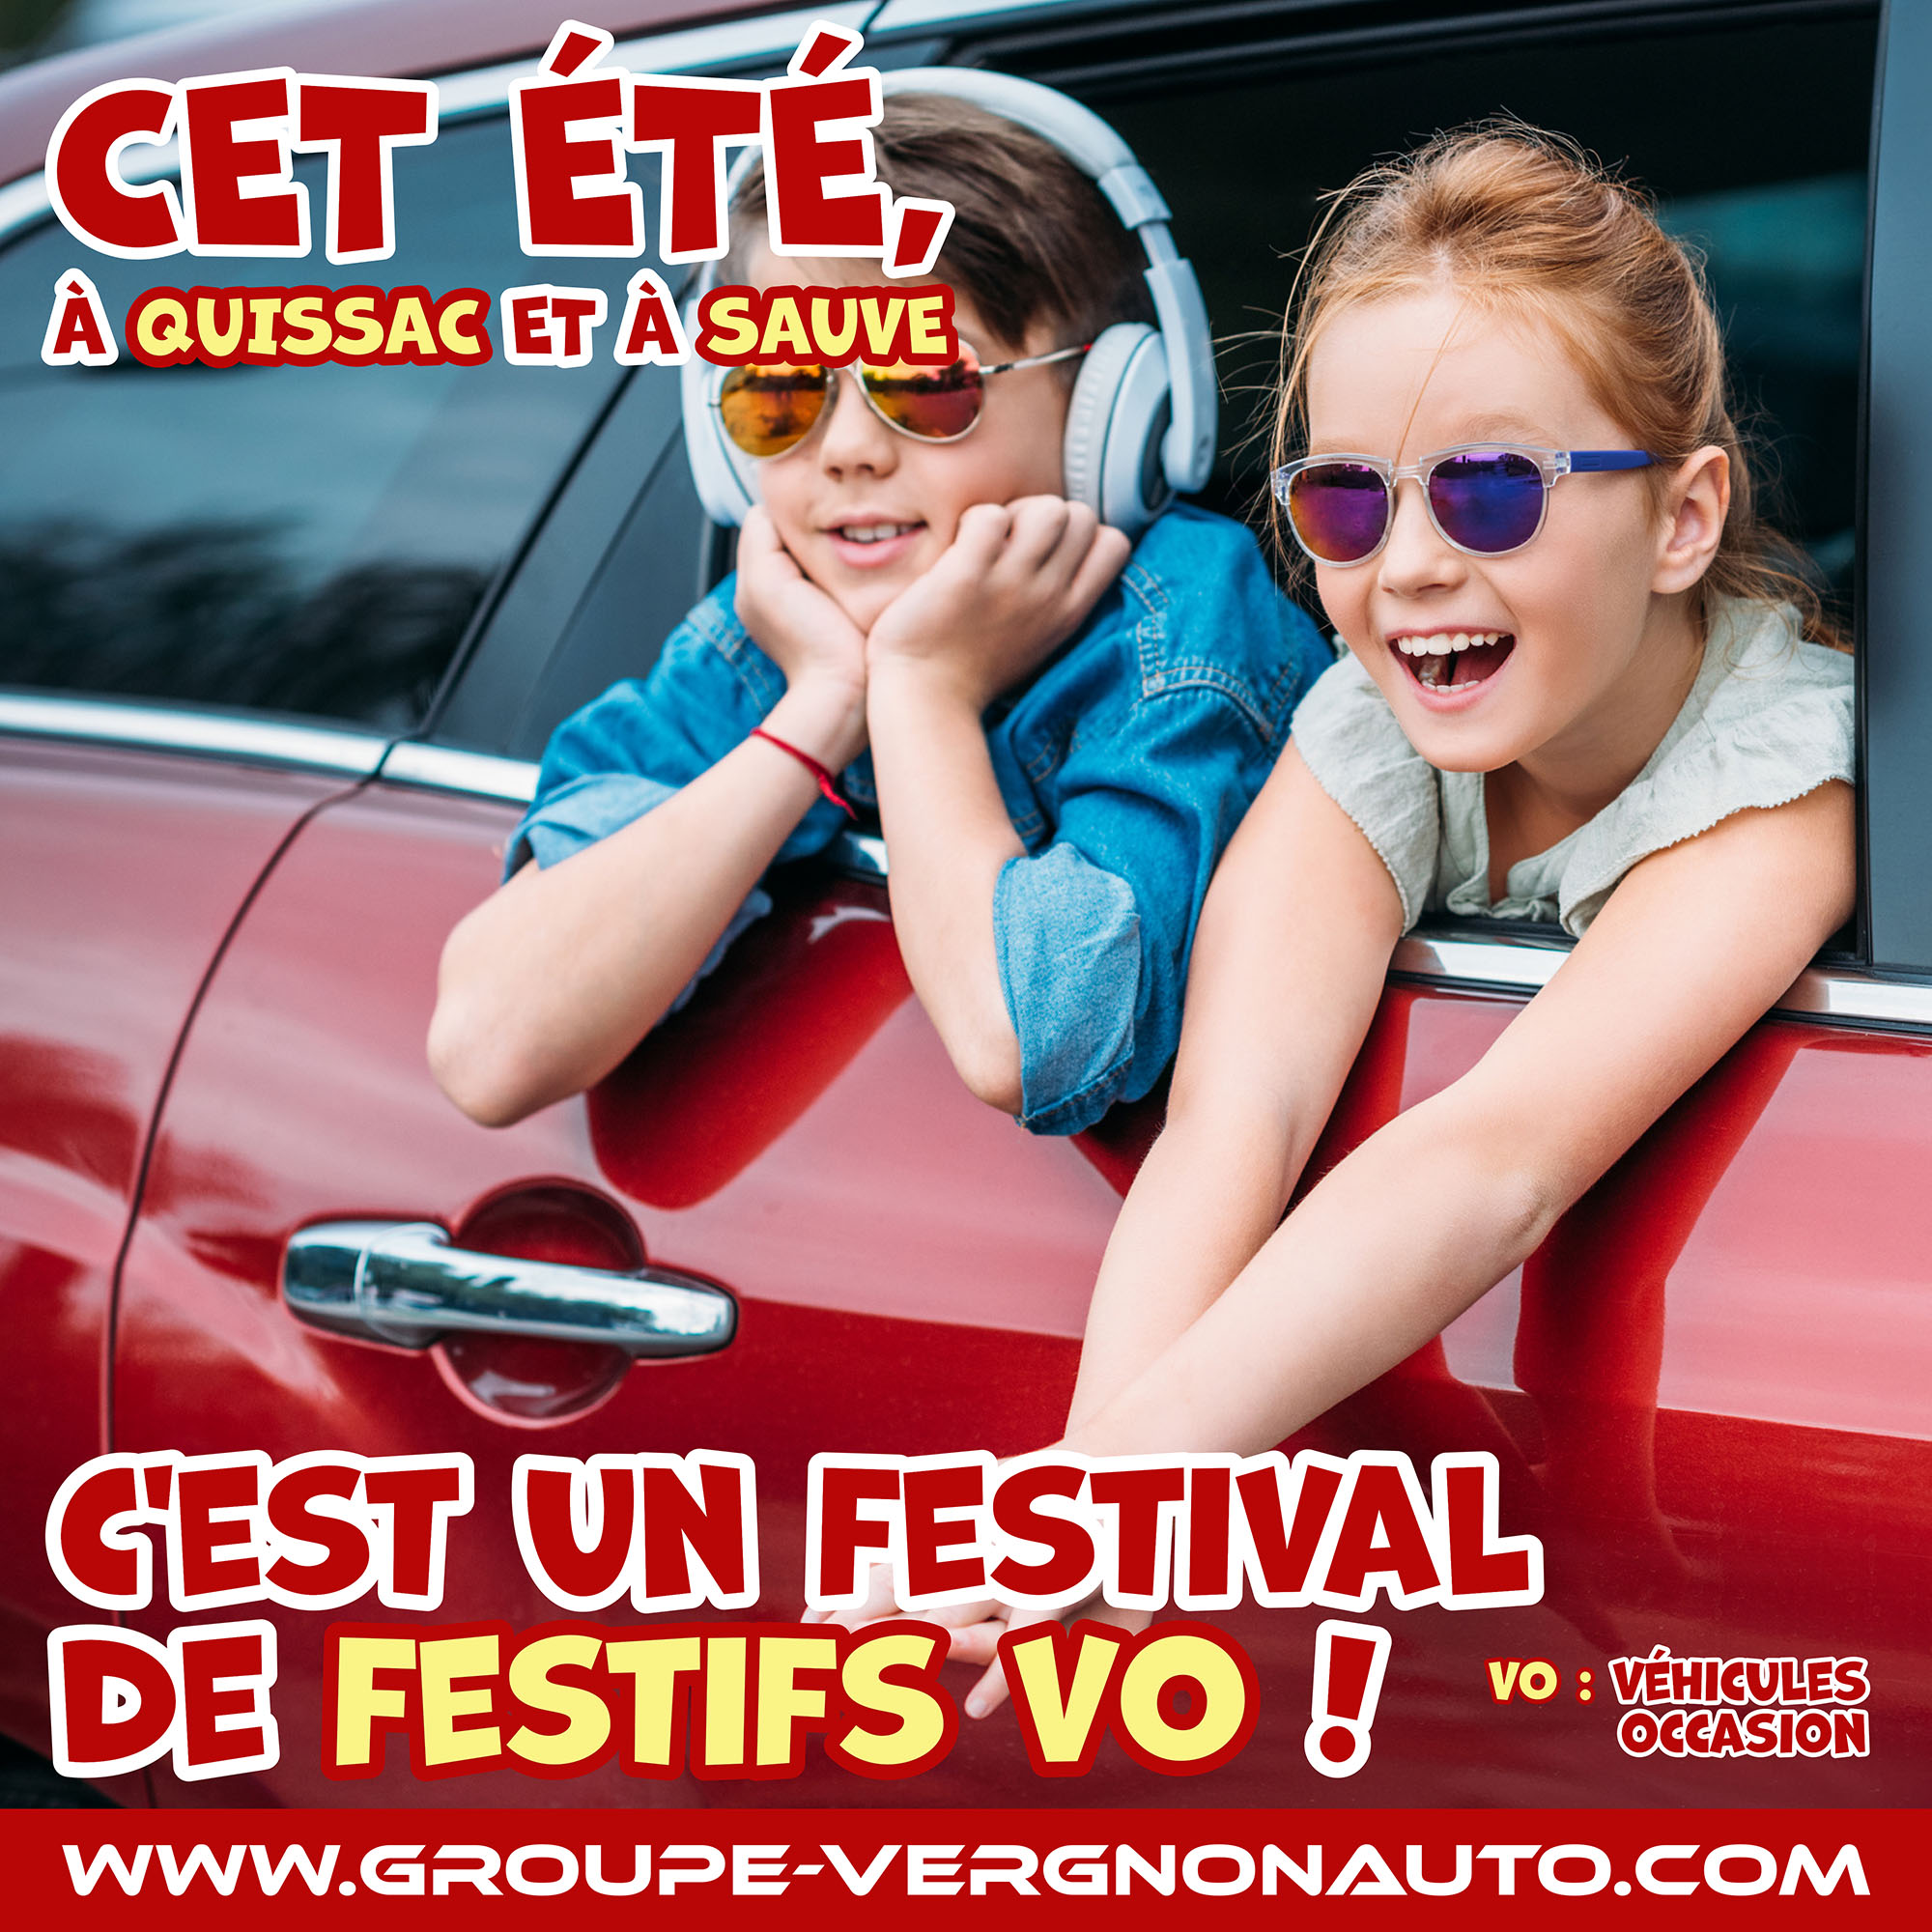 Renault, Dacia, Peugeot, Citroën et autres marques ! Cet été, c'est un festival de festifs VO (véhicules d'occasion) à Quissac et à Sauve, dans le Gard !